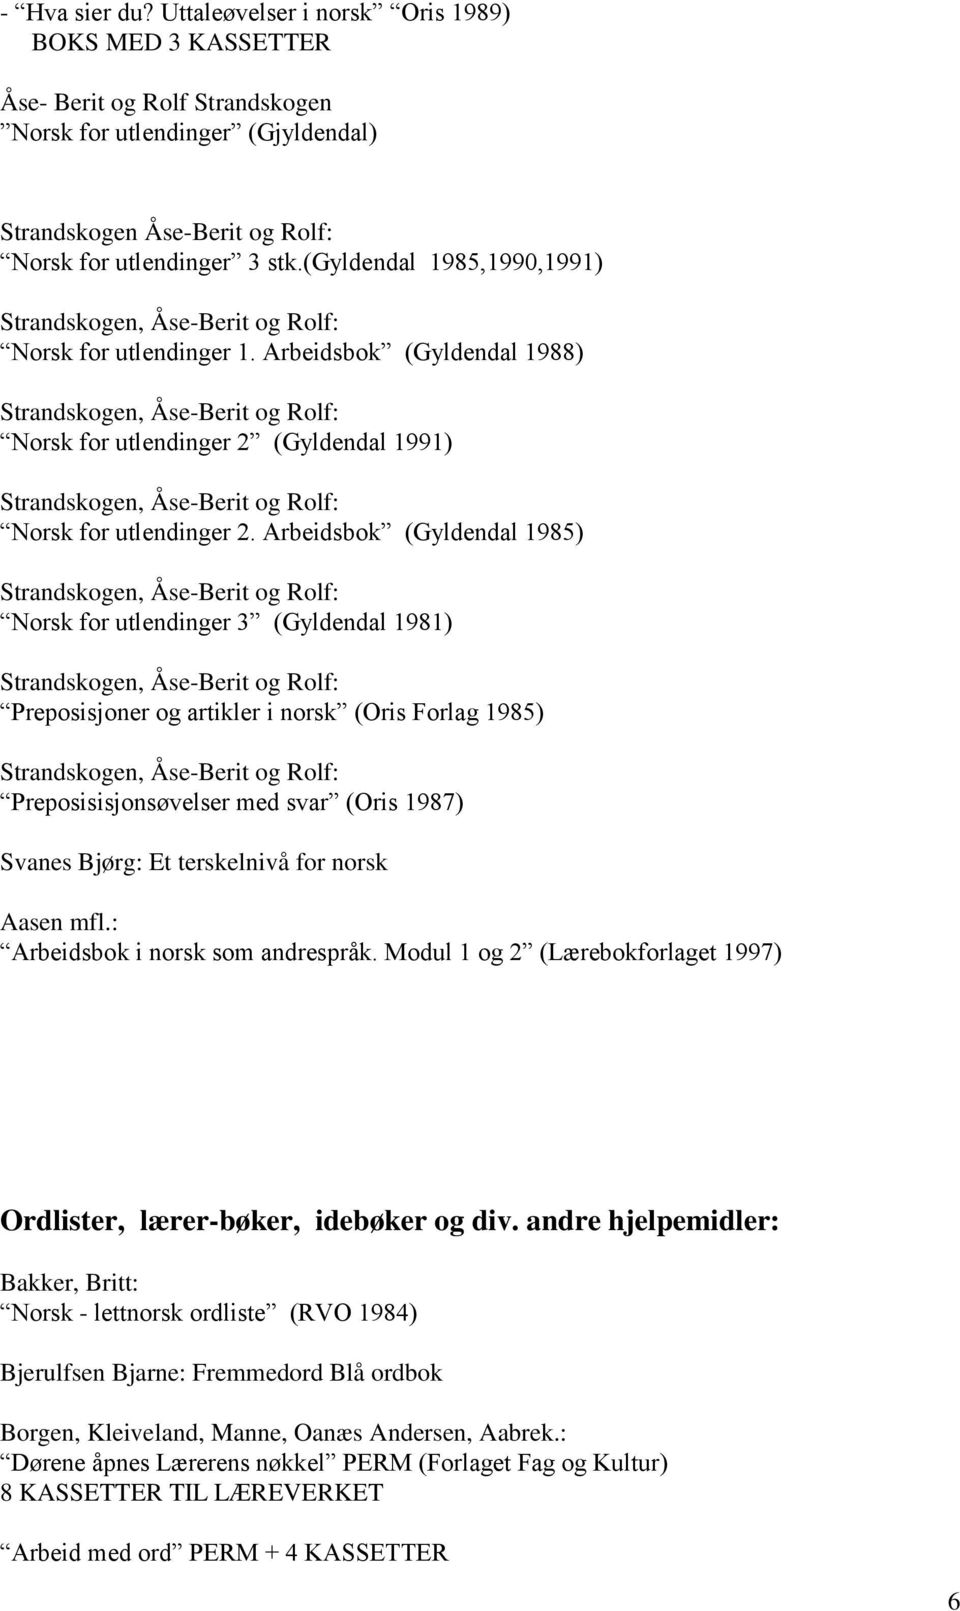 Arbeidsbok (Gyldendal 1985) Norsk for utlendinger 3 (Gyldendal 1981) Preposisjoner og artikler i norsk (Oris Forlag 1985) Preposisisjonsøvelser med svar (Oris 1987) Svanes Bjørg: Et terskelnivå for